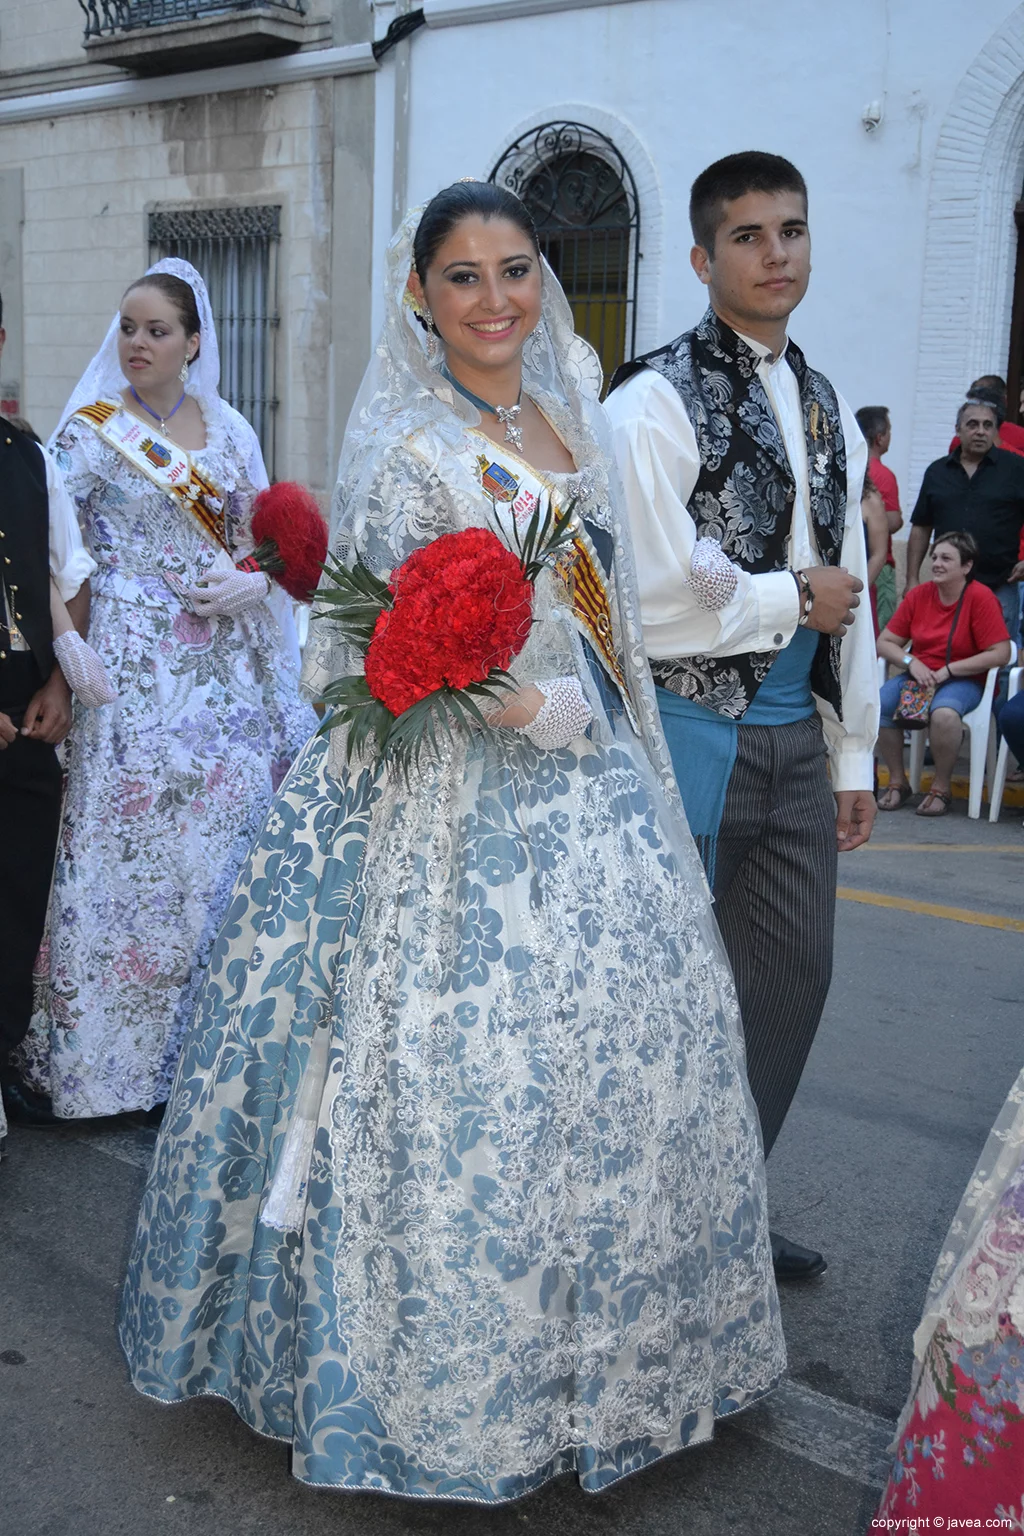 Lorena Morell Buigues y Nicolás Rodríguez Fontiveros